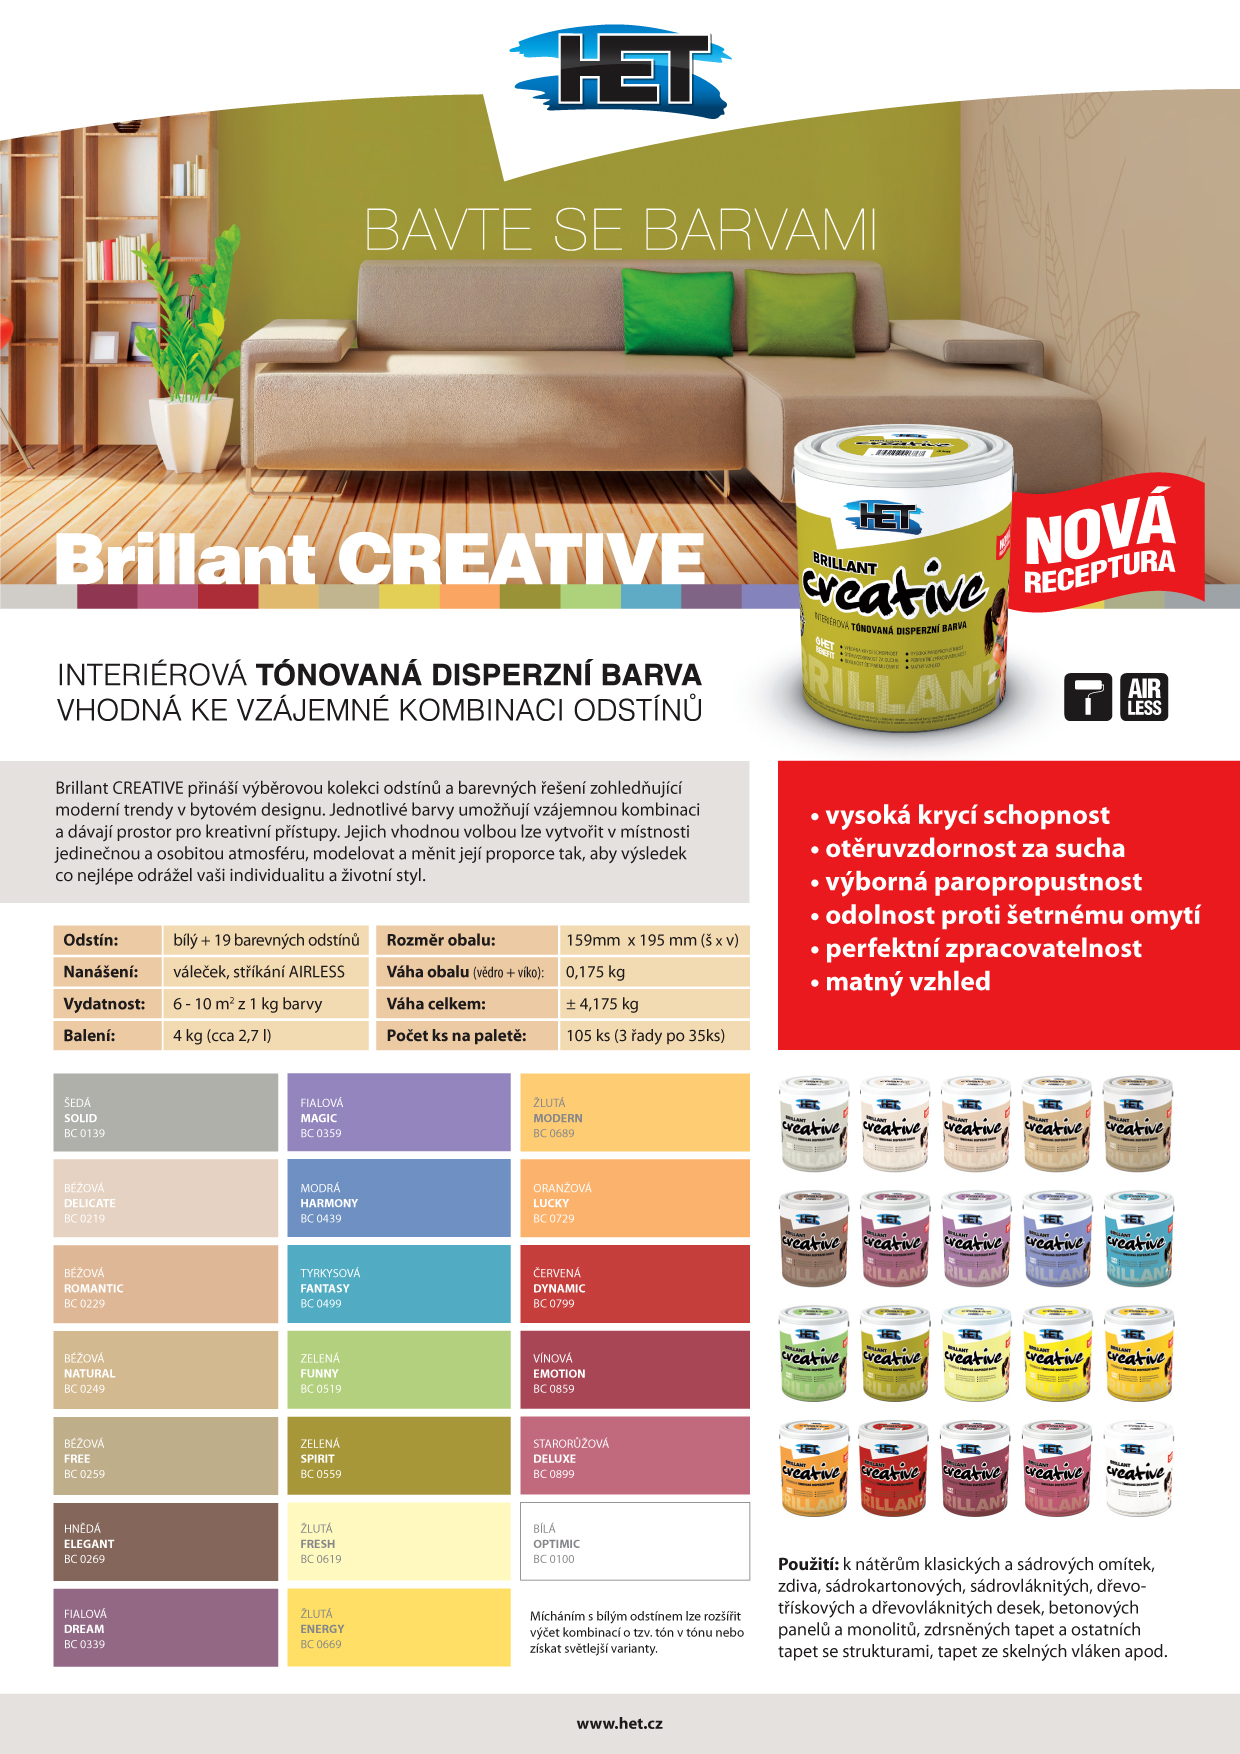 Brillant CREATIVE - interiérová tónovaná disperzní barva vhodná ke vzájemné kombinaci odstínů